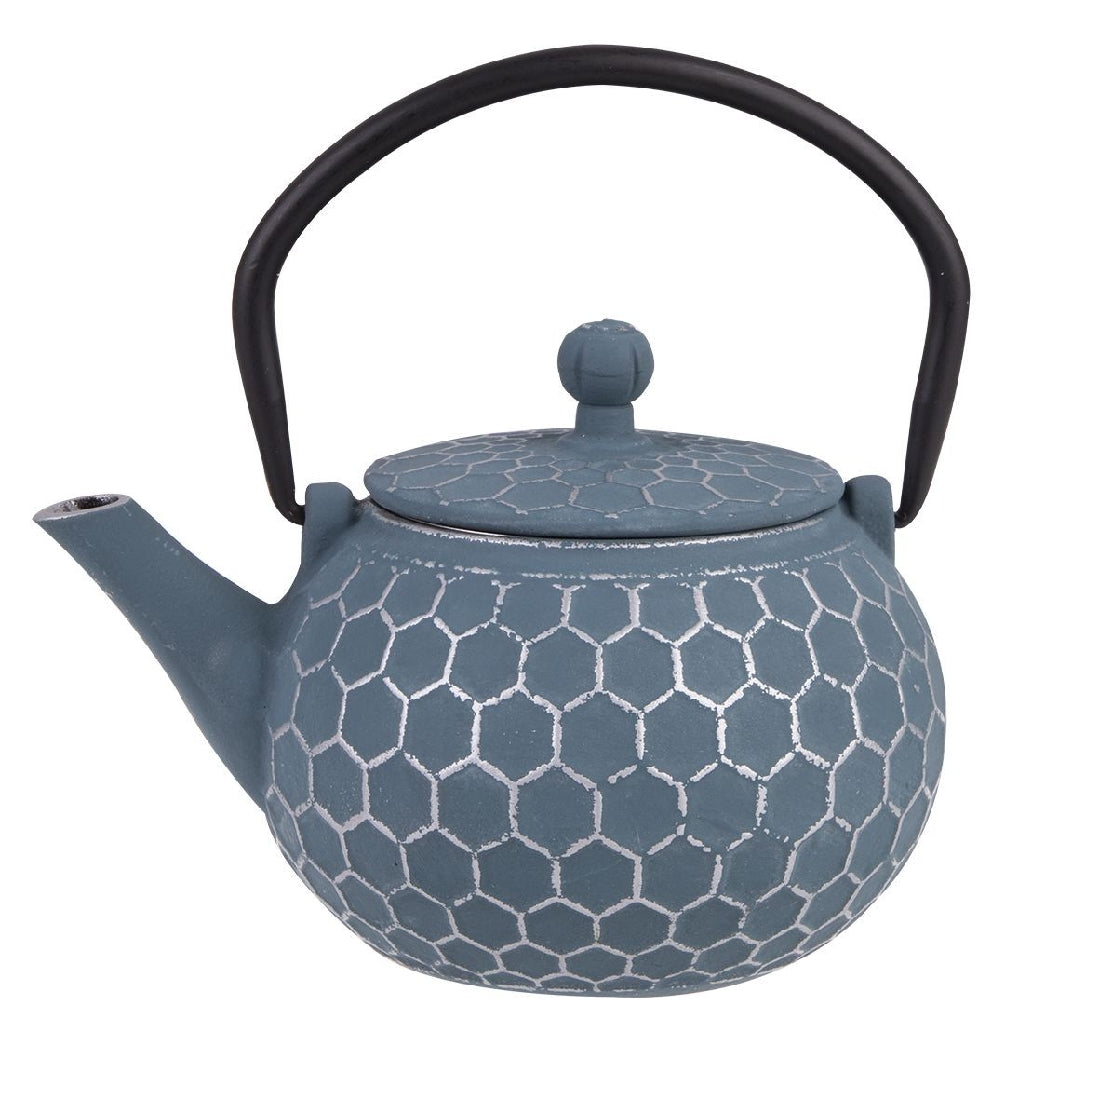 Teaology Cast Iron Teapot 500ml - Blue/silver Honeycomb